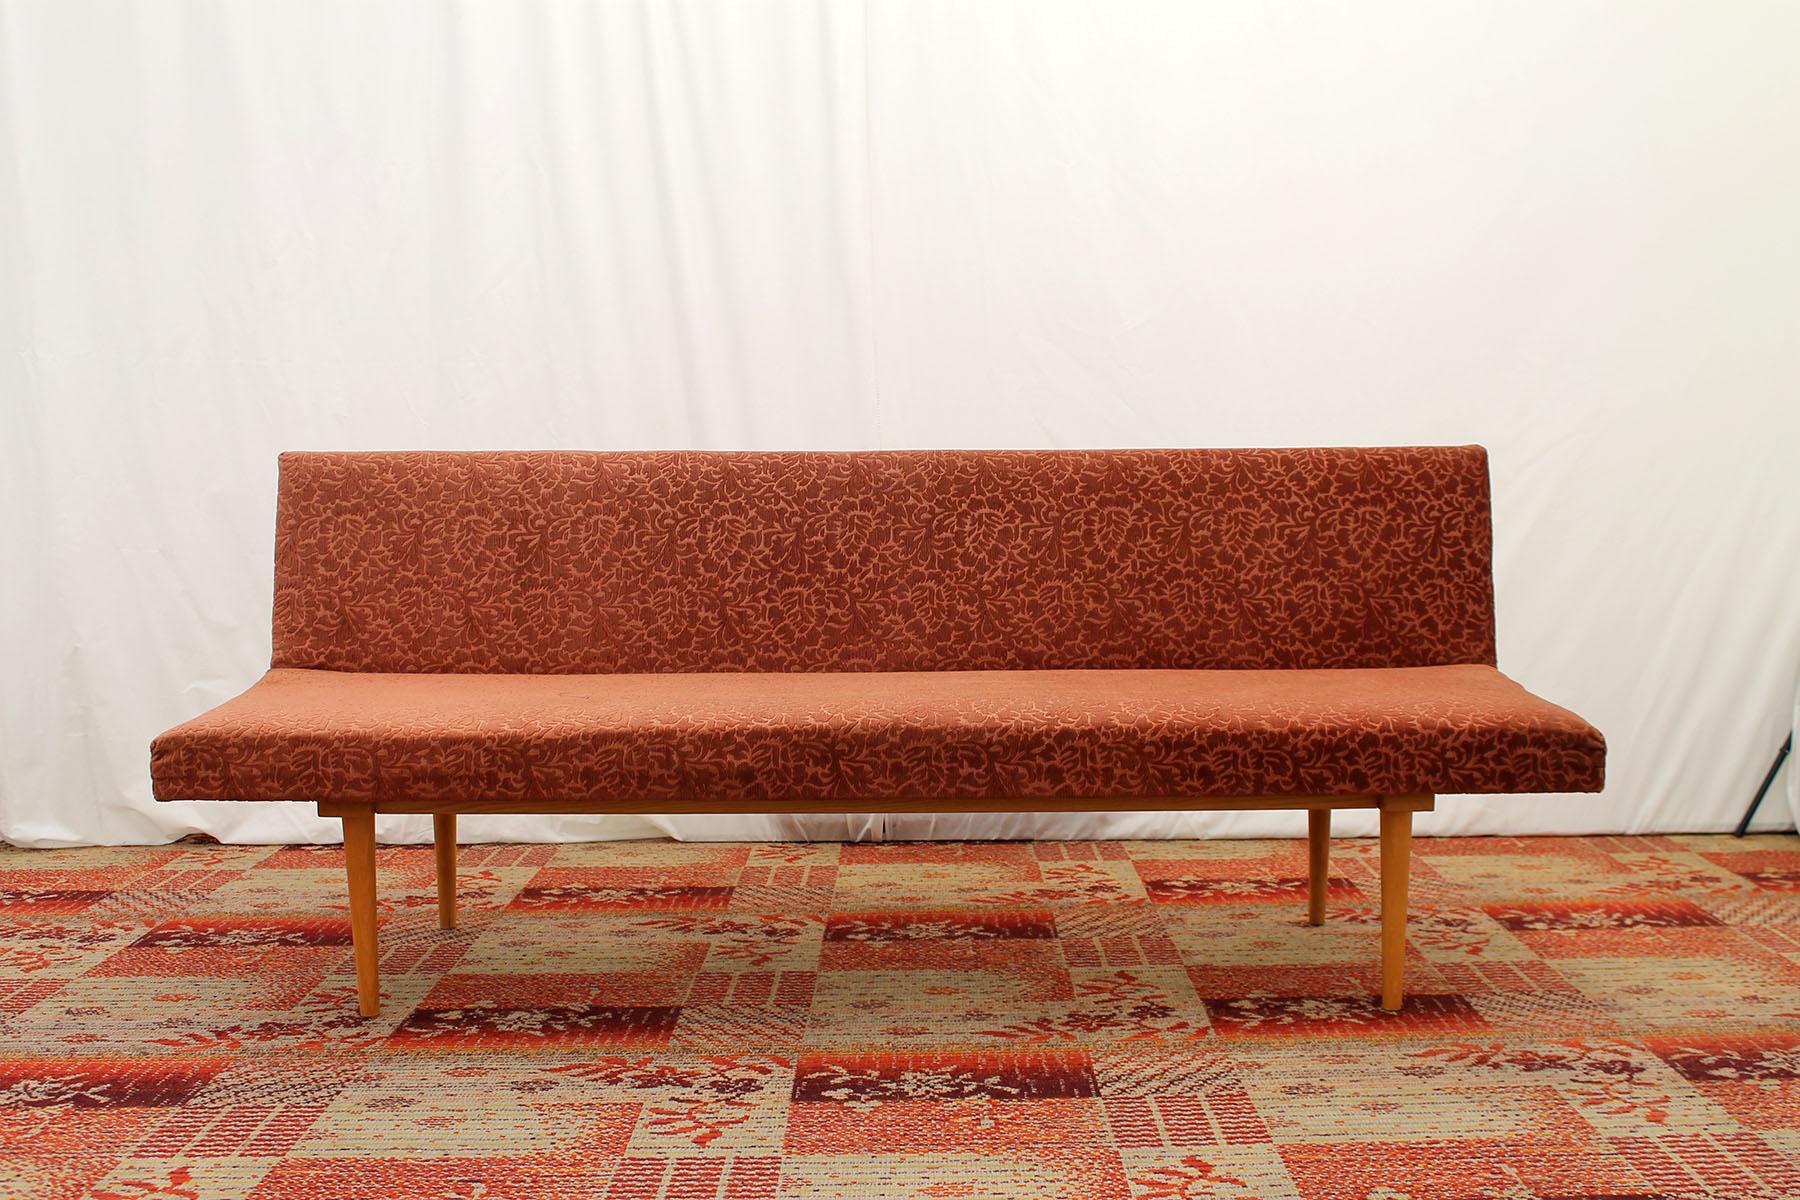 Sofa/Tagesbett aus der Mitte des Jahrhunderts, hergestellt in der ehemaligen Tschechoslowakei in den 1960er Jahren, entworfen von Miroslav Navrátil. MATERIAL: Buchenholz, Stoff. Das Sofa ist in einem gut erhaltenen Vintage-Zustand, der leichte